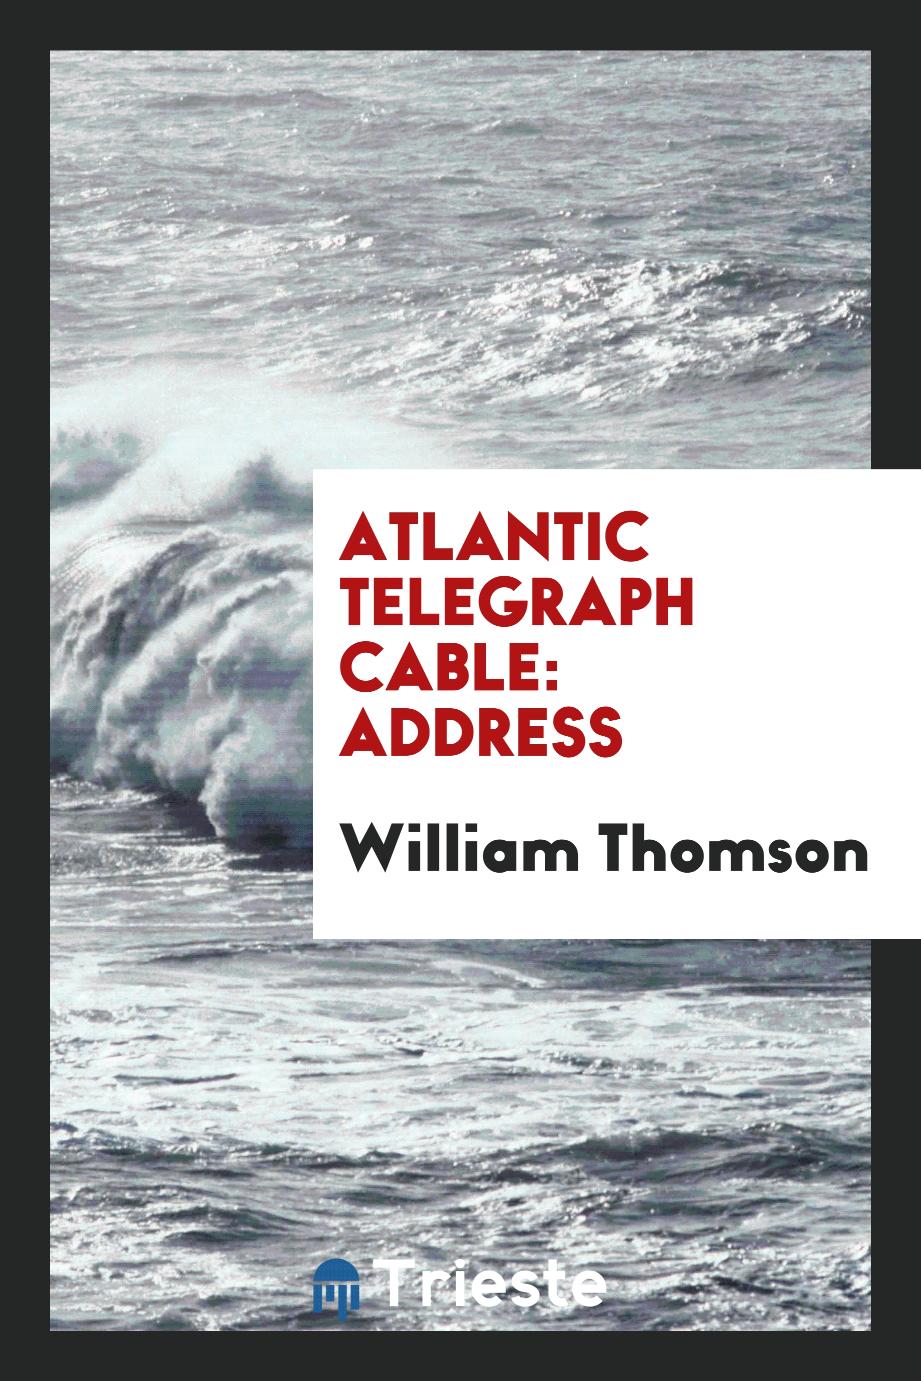 William Thomson - Atlantic Telegraph Cable: Address